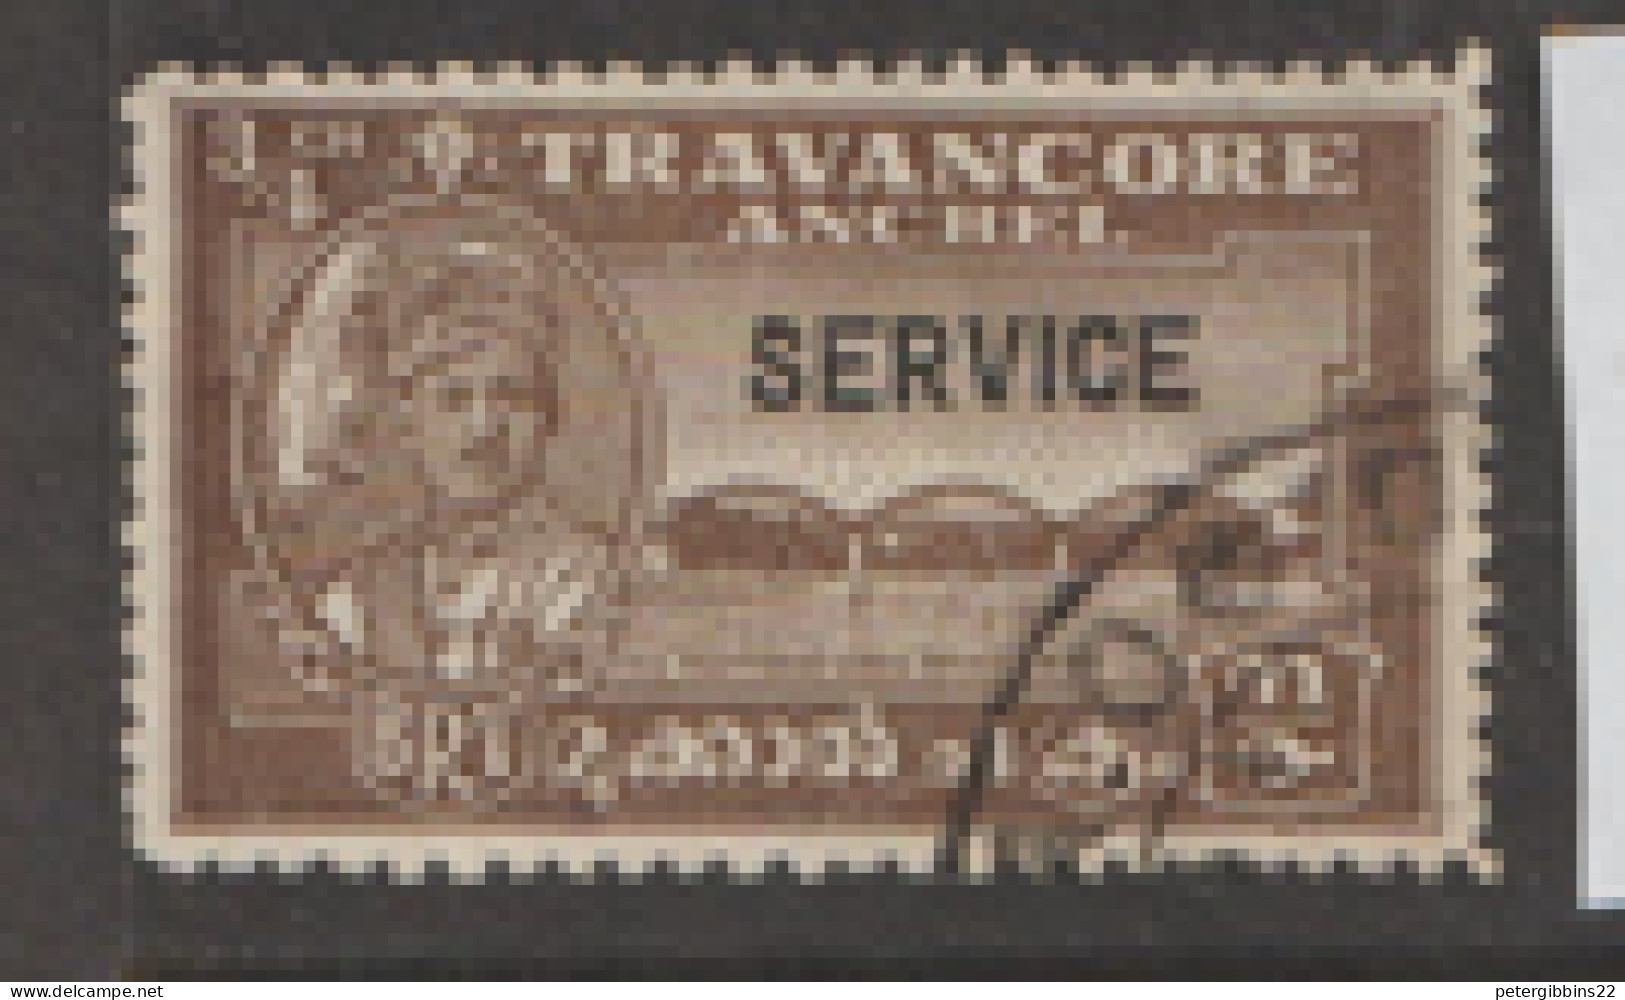 India   Travancore  Service  1942  SG  0104c  Perf 12  Fine Used - Travancore